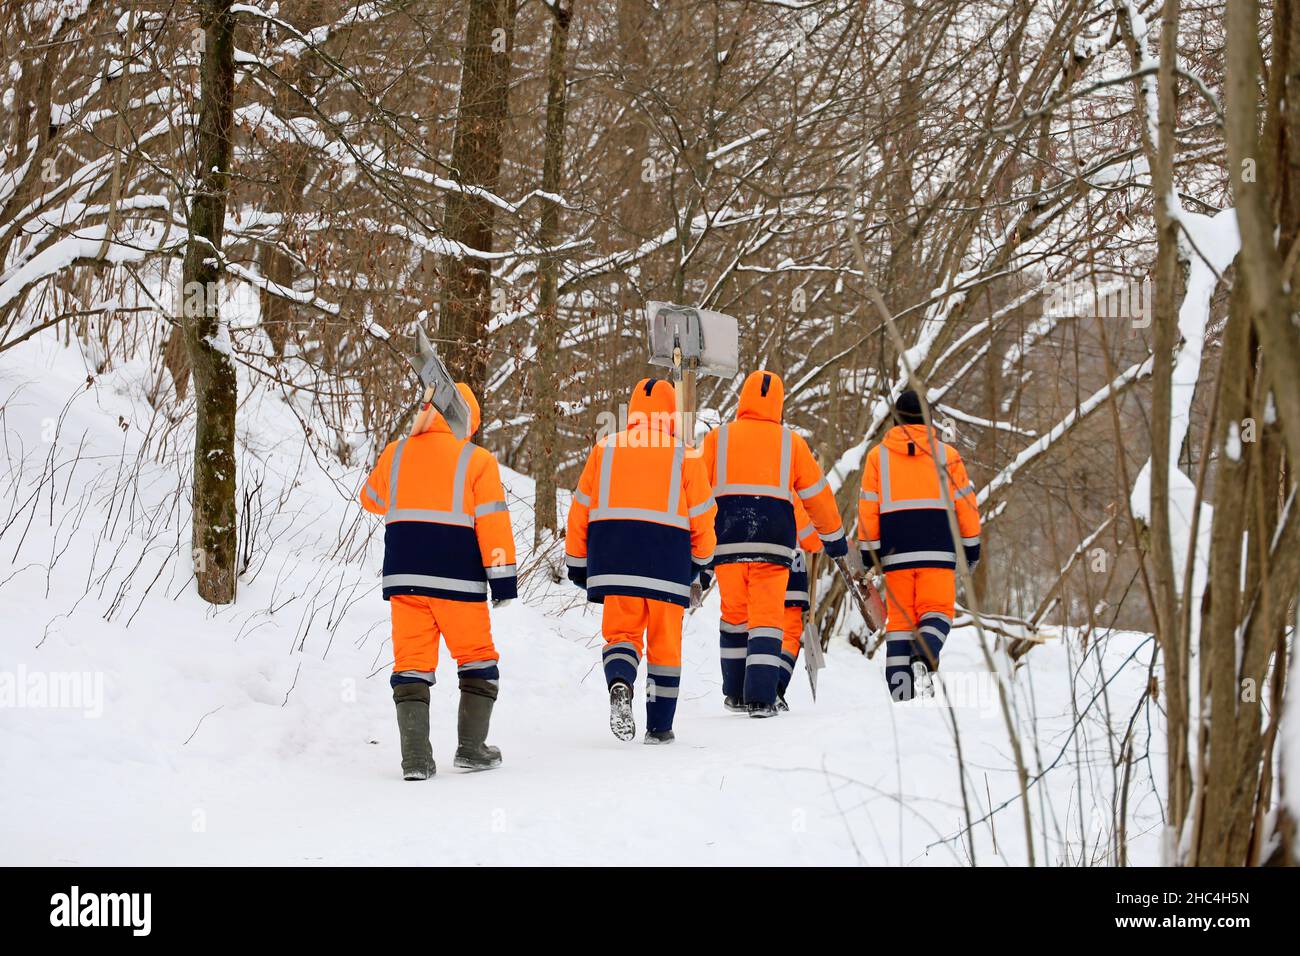 Les ouvriers en uniforme orange avec des pelles vont nettoyer la neige dans le parc.Nettoyage de rue dans la ville d'hiver Banque D'Images